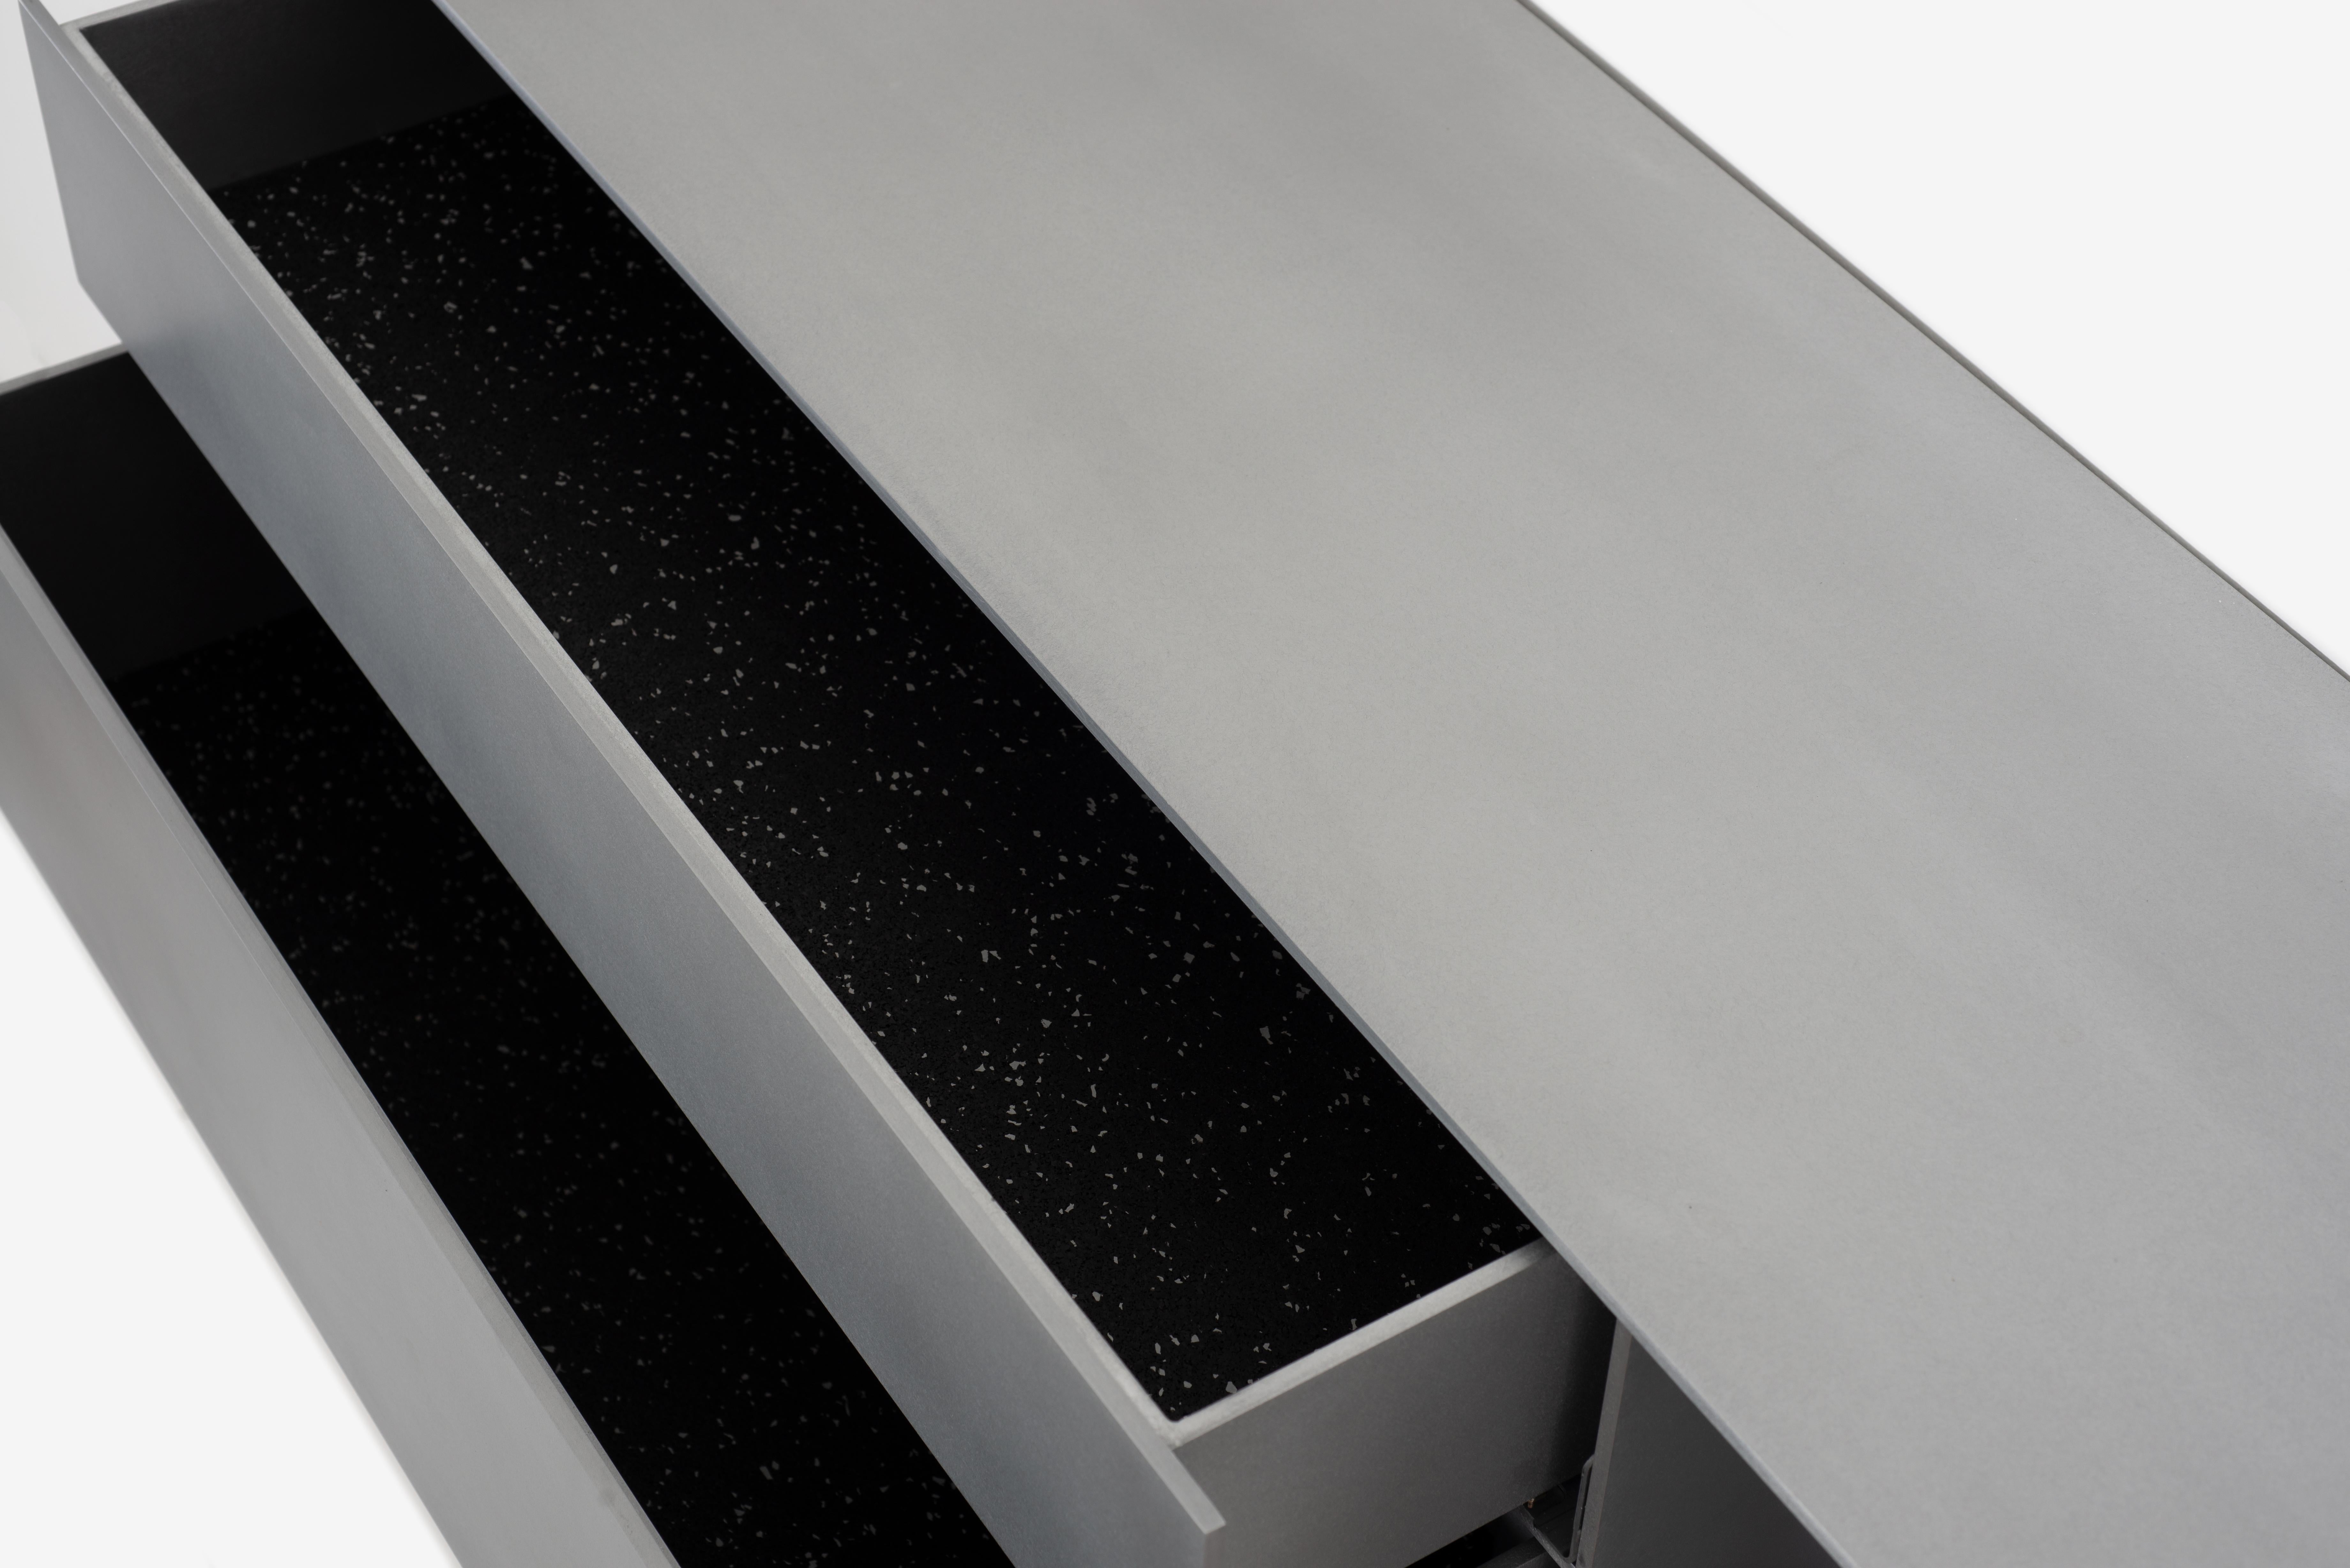 L'étagère murale Minimalist G est sculptée dans un aluminium de 1/4 de pouce d'épaisseur, poli à la cire, avec deux tiroirs dotés de patins à fermeture douce Blum motion. Chaque tiroir est garni de feutre 100% laine ou de caoutchouc noir découpé.